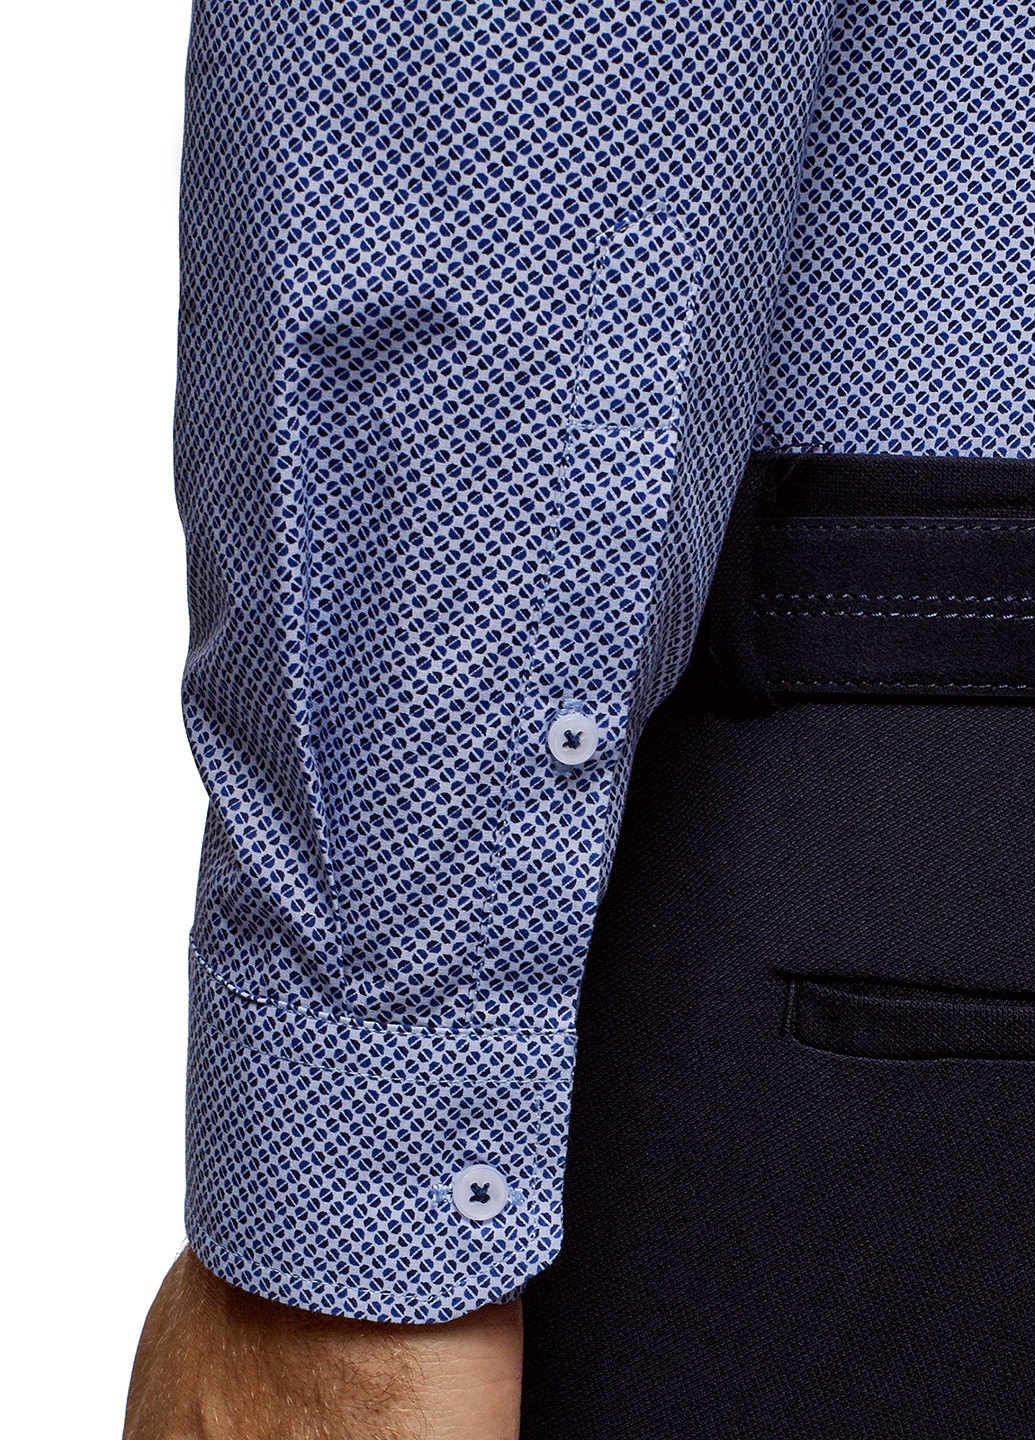 Синяя кэжуал рубашка с геометрическим узором Oodji с длинным рукавом